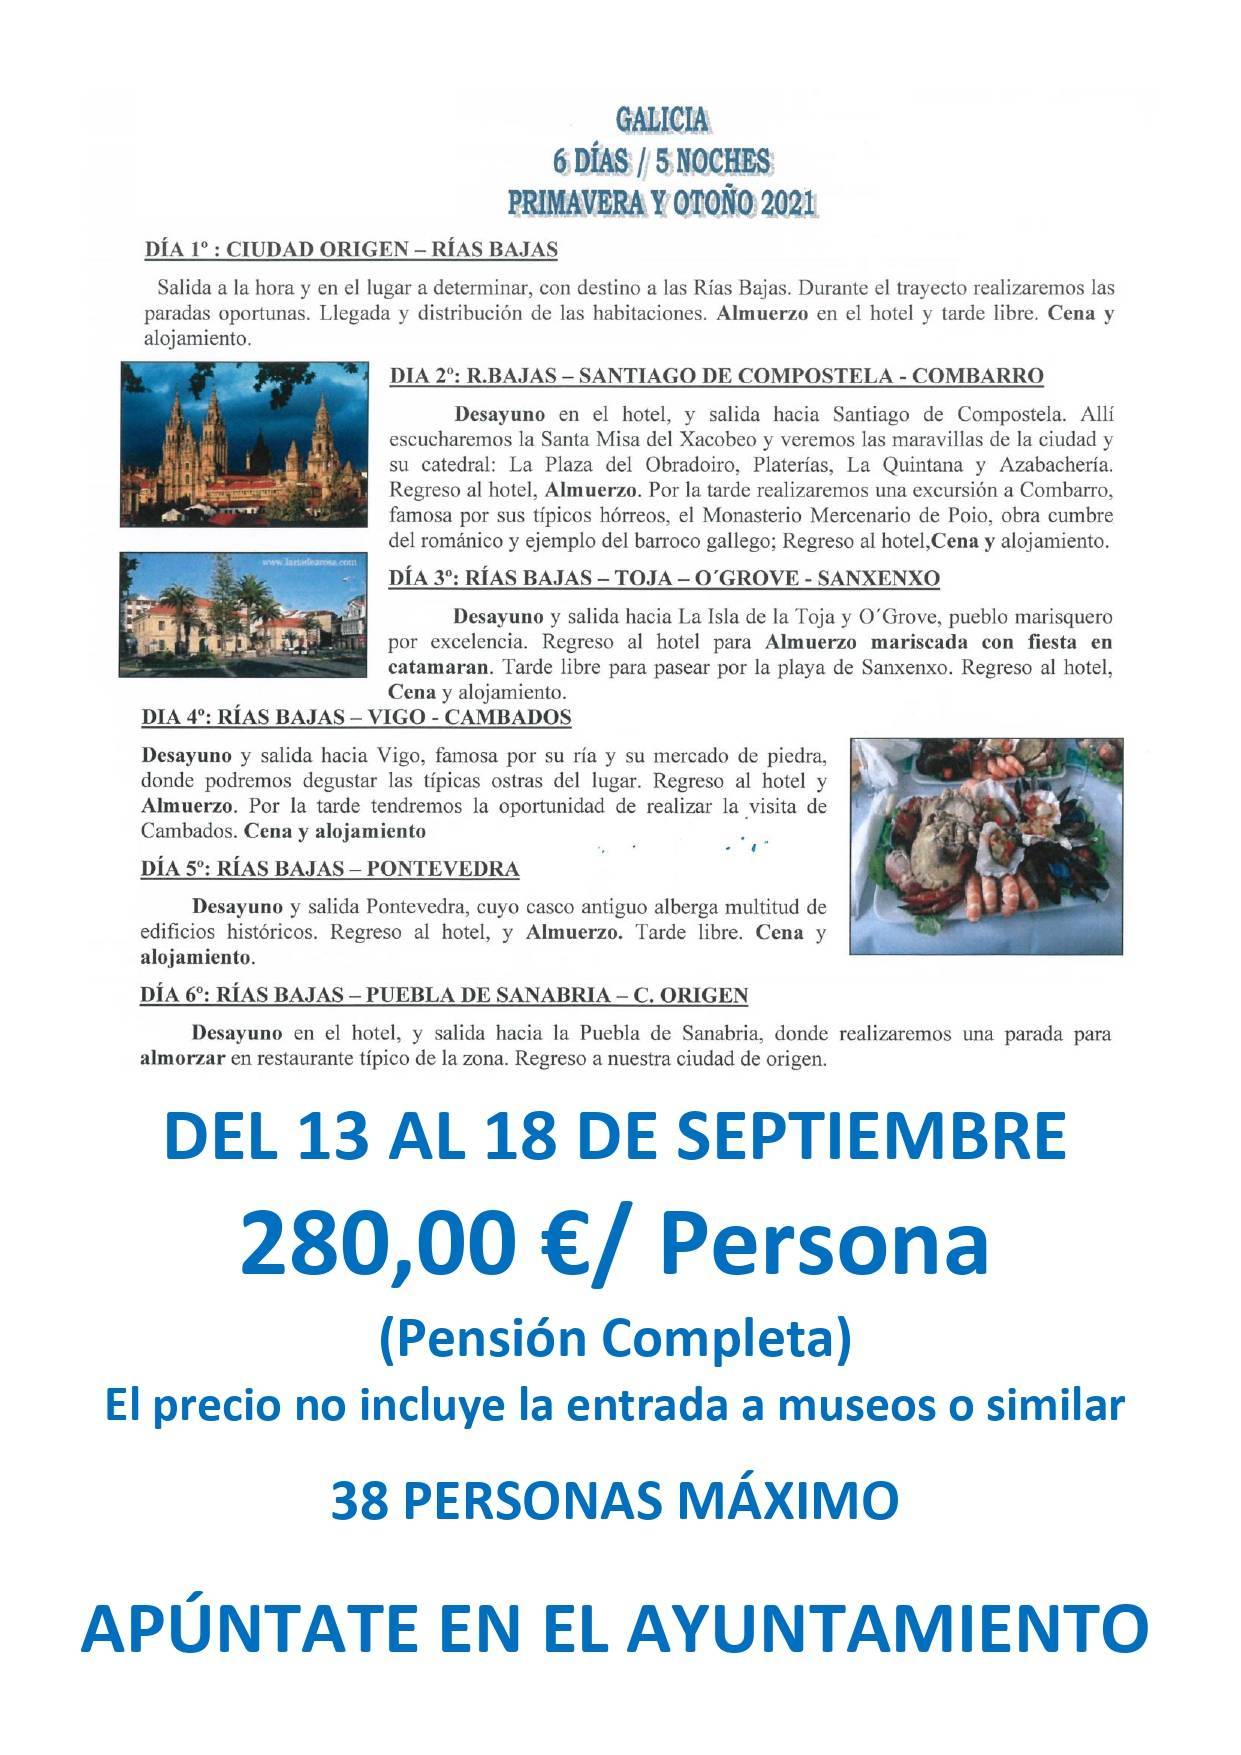 Viaje a Galicia (2021) - Alía (Cáceres)